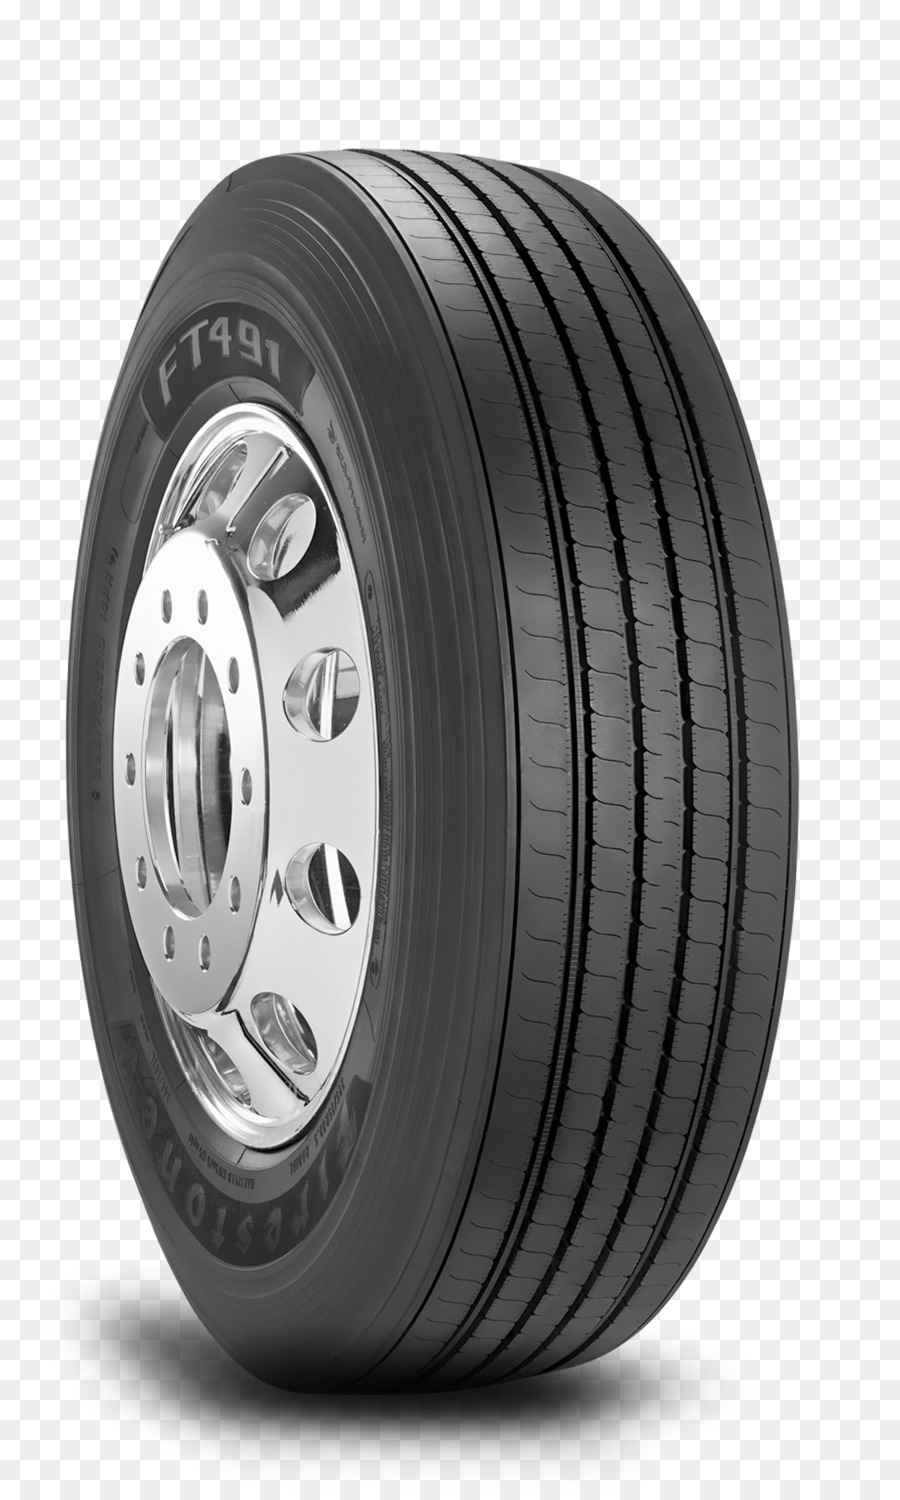 Auto Firestone Tire and Rubber Company Prezzo Bridgestone - auto